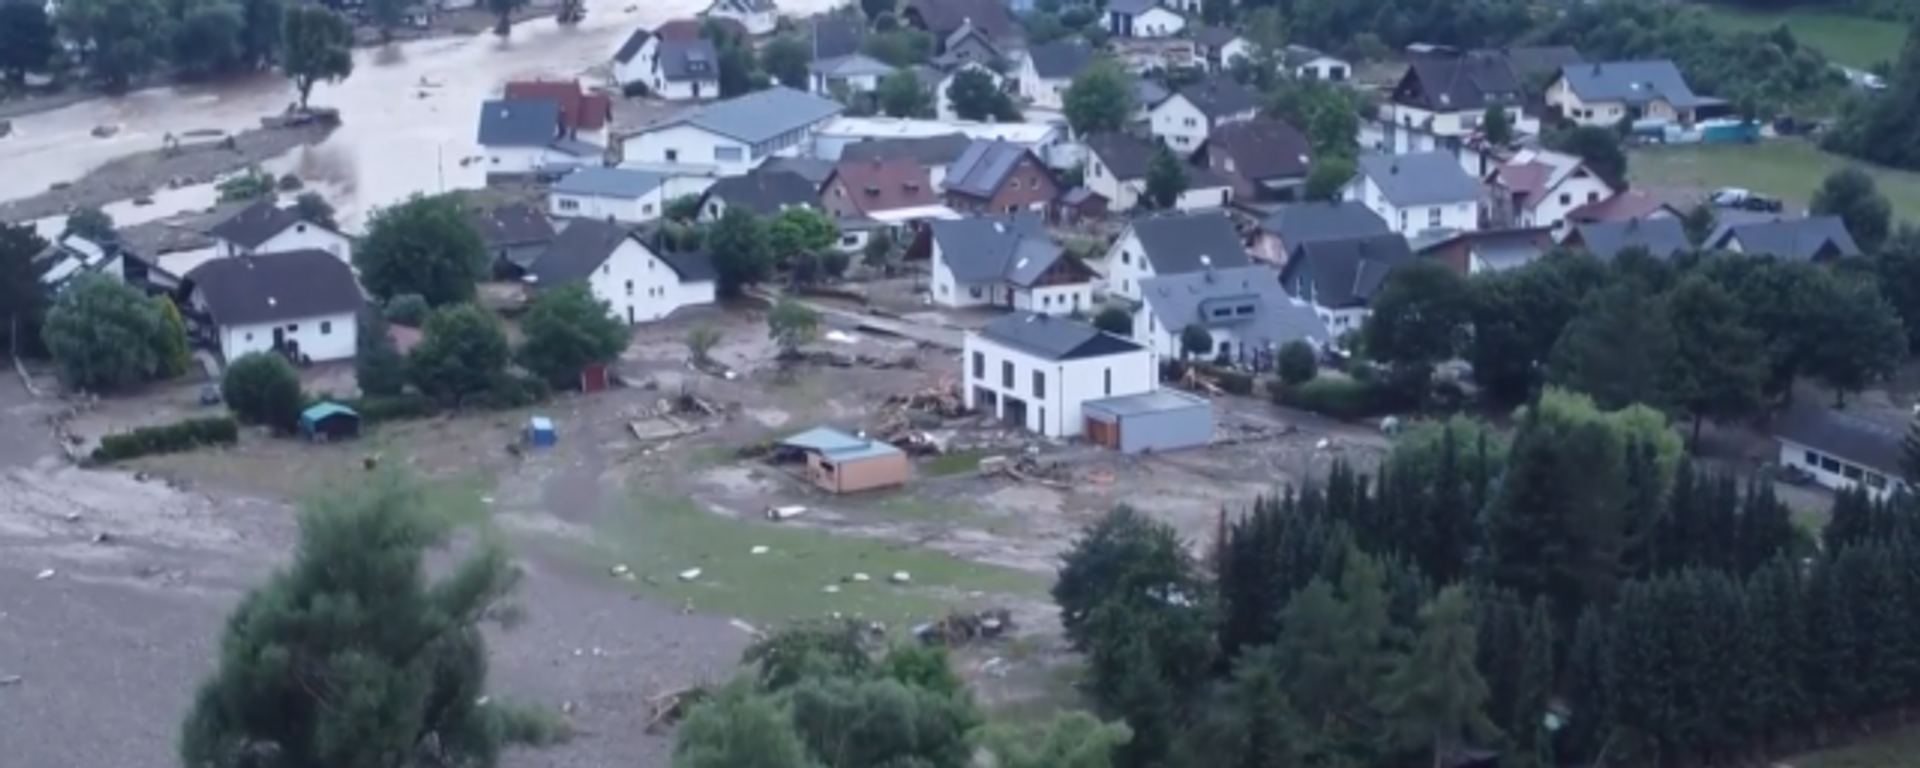 Катастрофалне поплаве на западу Немачке снимљене из дрона - Sputnik Србија, 1920, 16.07.2021